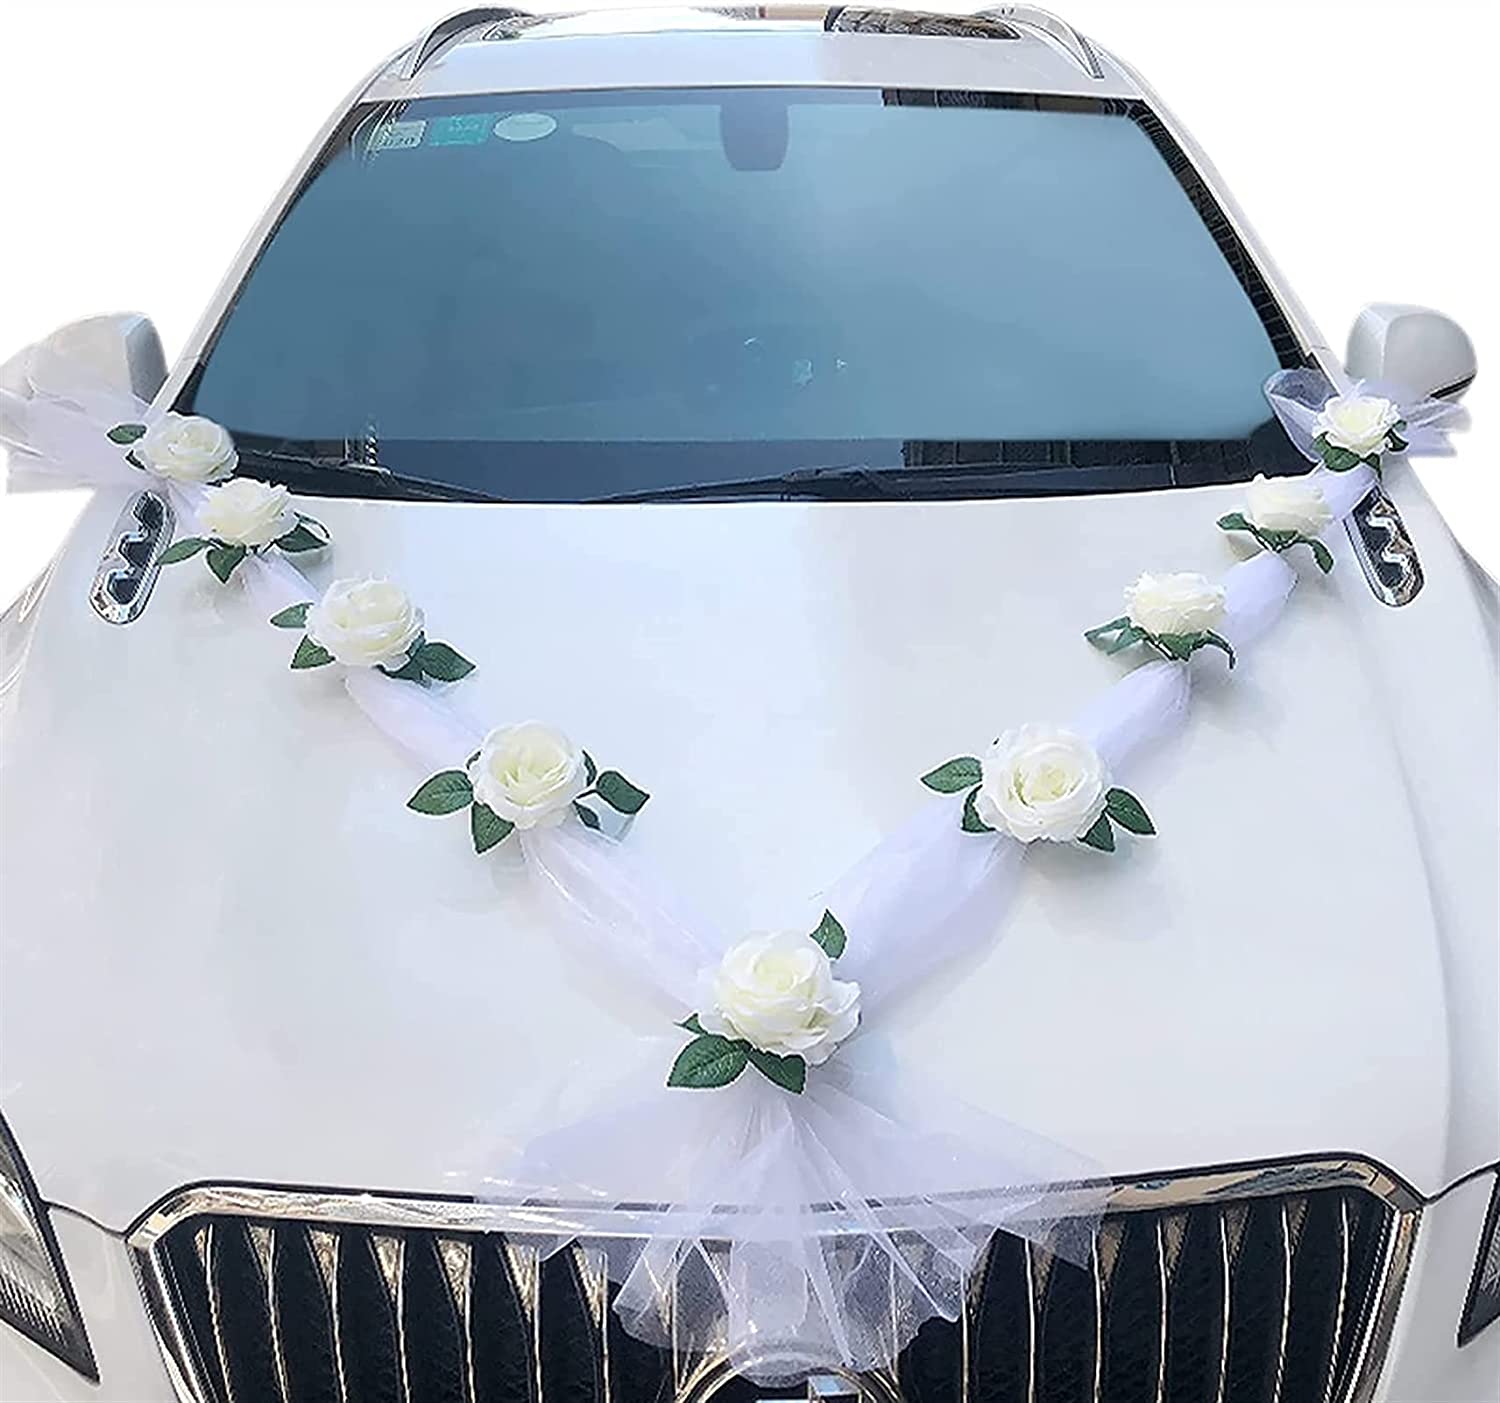 La décoration de voiture de mariage - c'est faisable!  Voiture mariage, Décoration  voiture mariage, Voiture de mariés